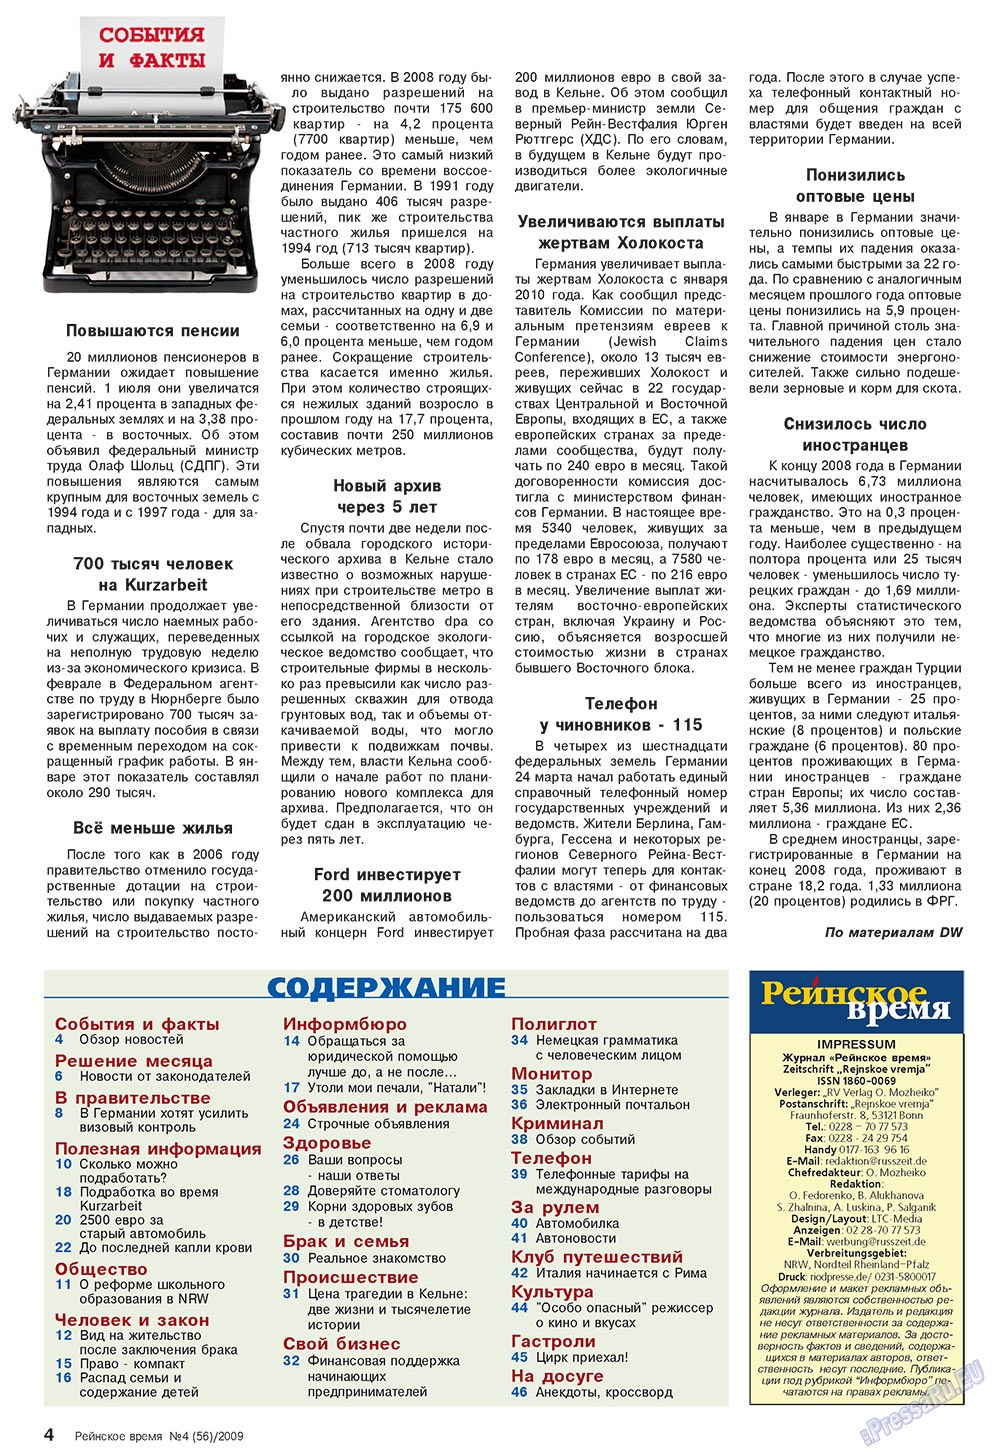 Рейнское время (журнал). 2009 год, номер 4, стр. 4